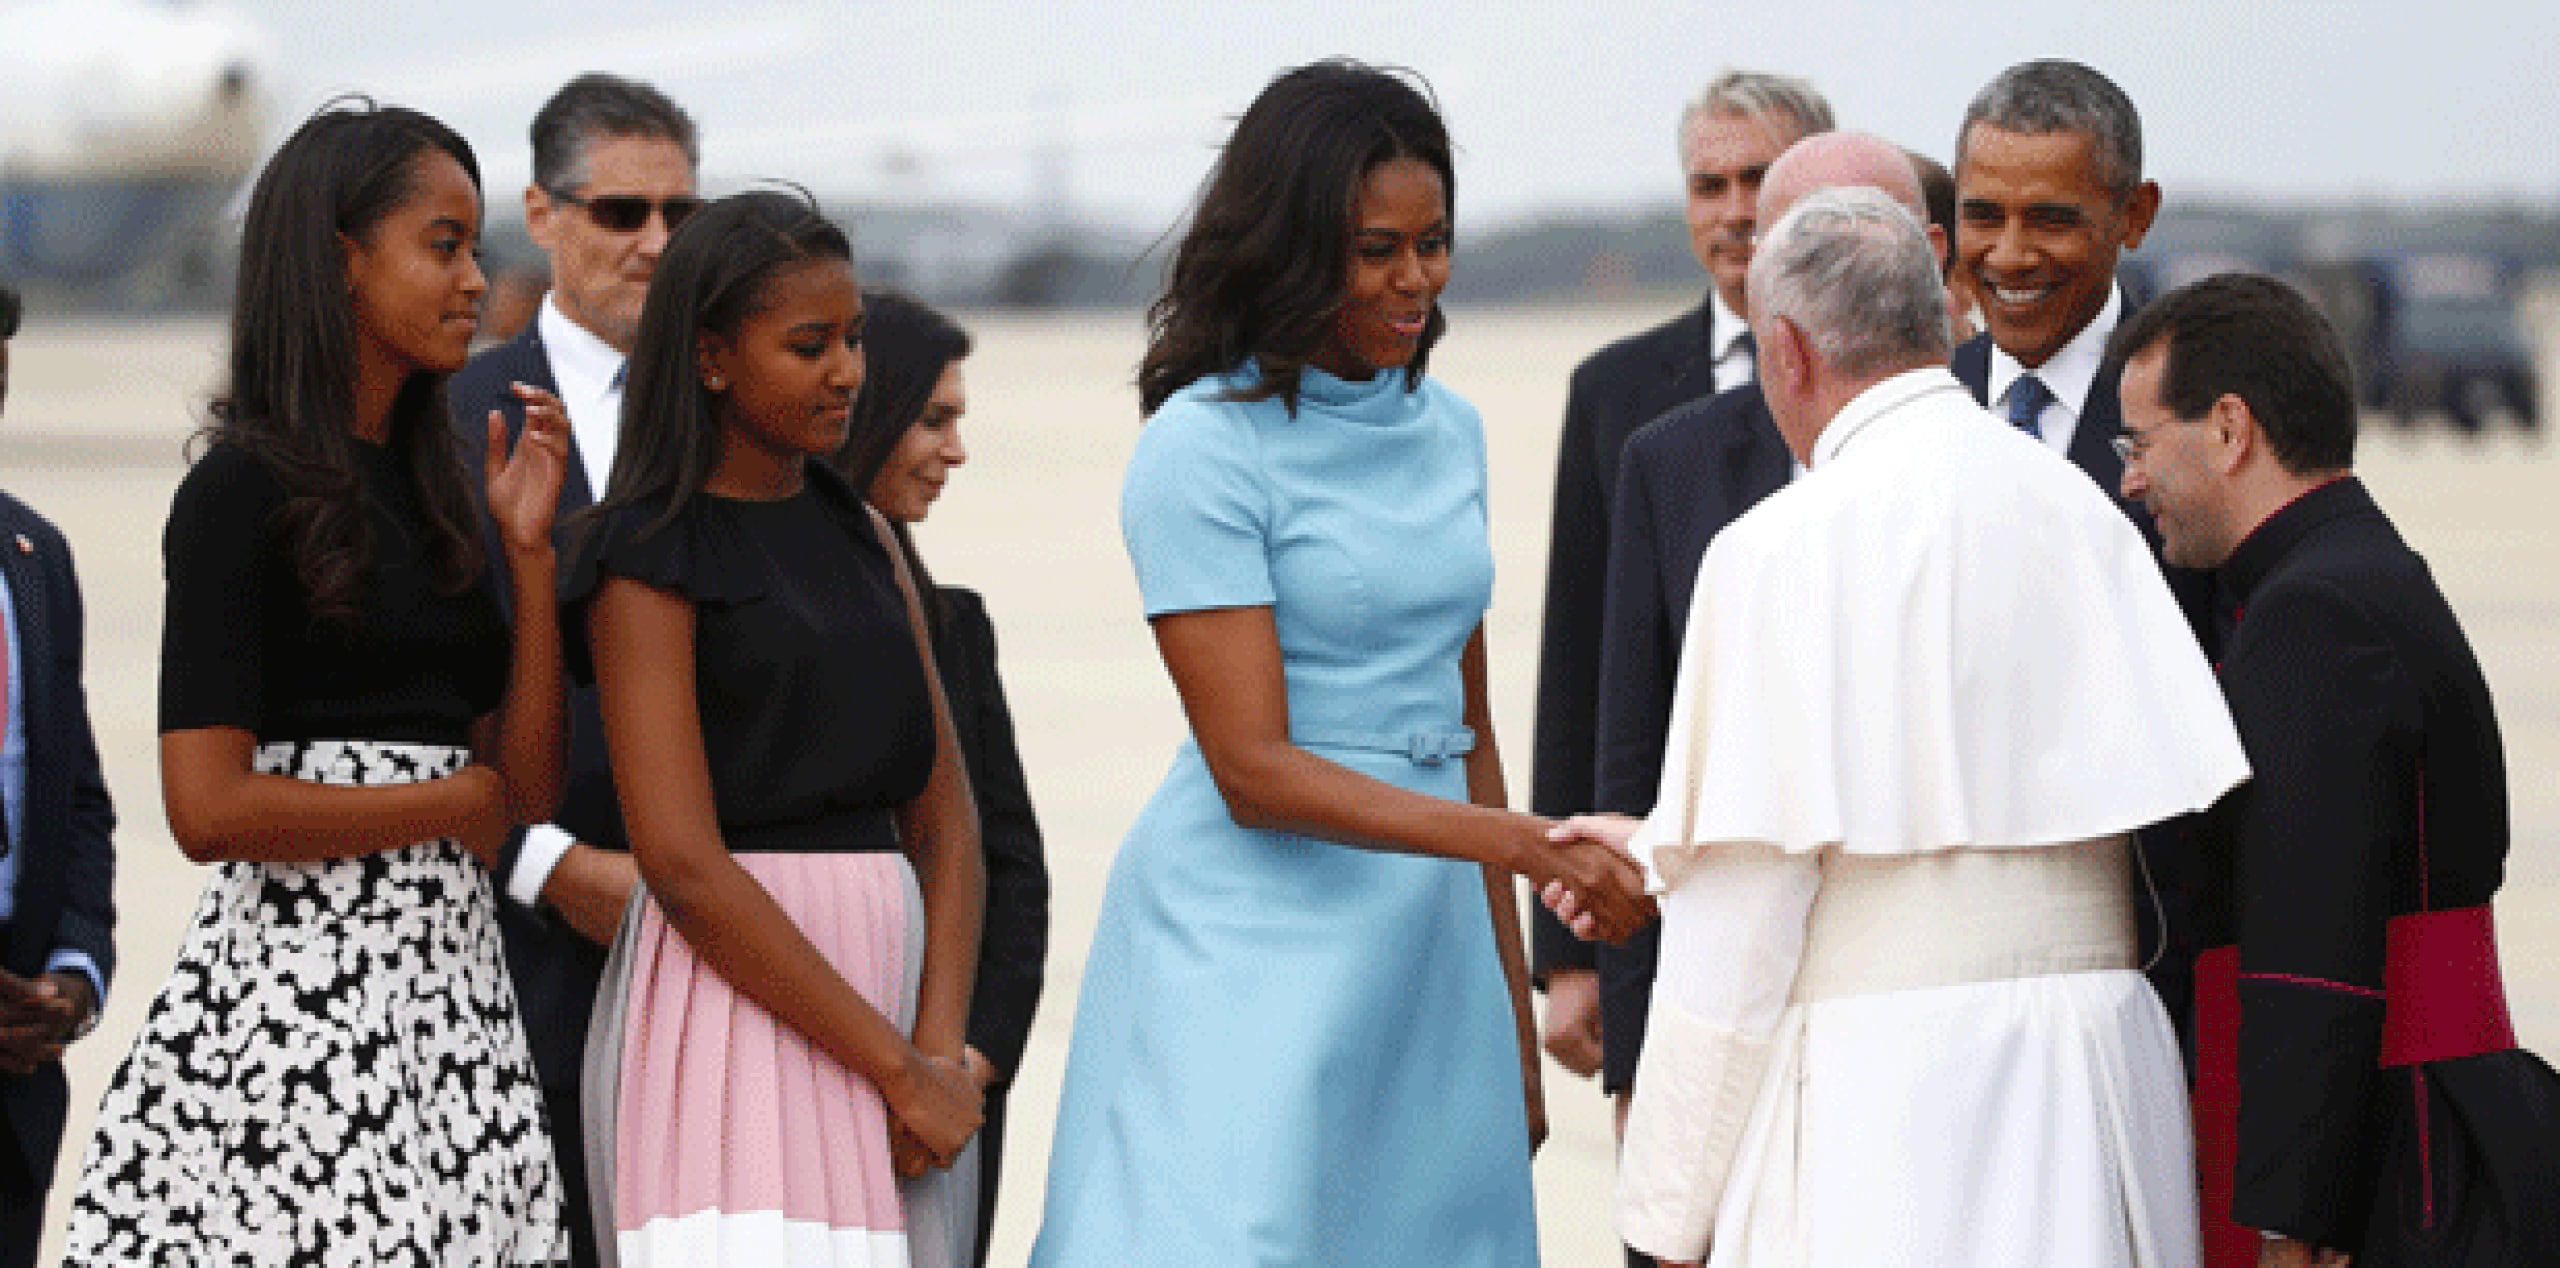 El religioso fue recibido el presidente, Barack Obama, y su esposa, Michelle, acompañados de sus hijas, Sasha y Malia. (EFE)